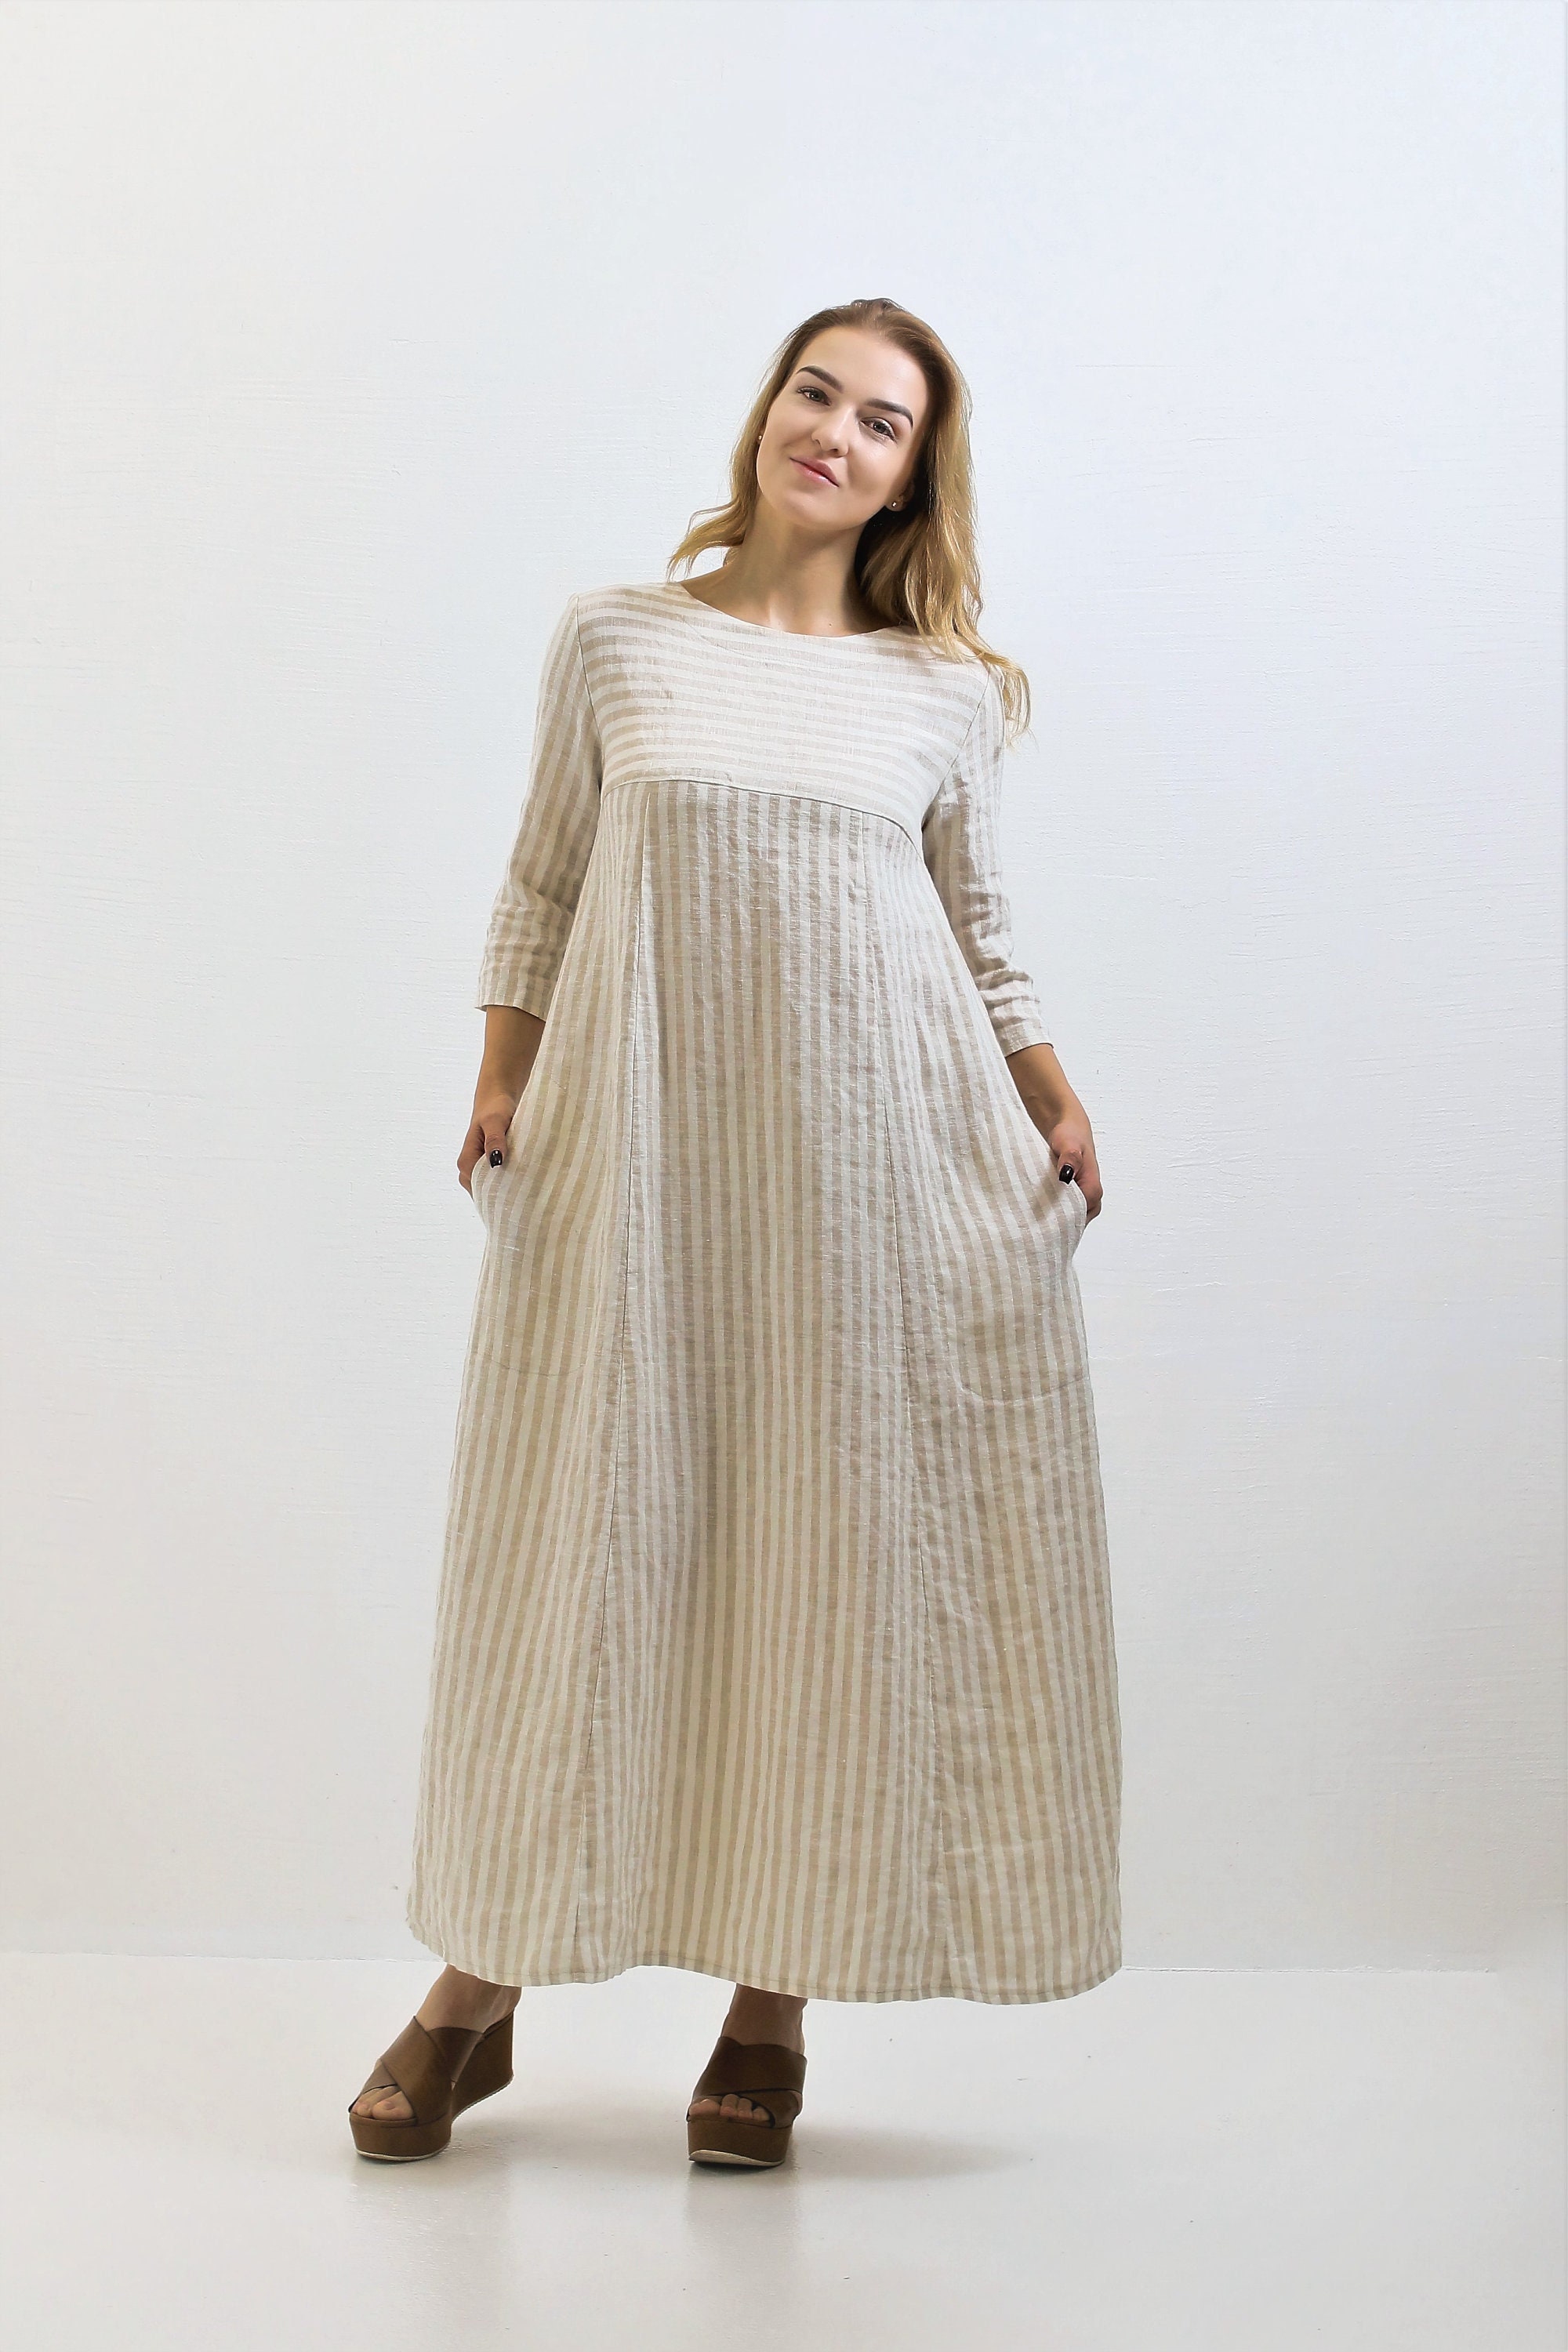 Linen Dress debra, Plus Size Dress With Pockets, Linen Dresses for Women, Long  Dress, Linen Summer Dress -  Canada